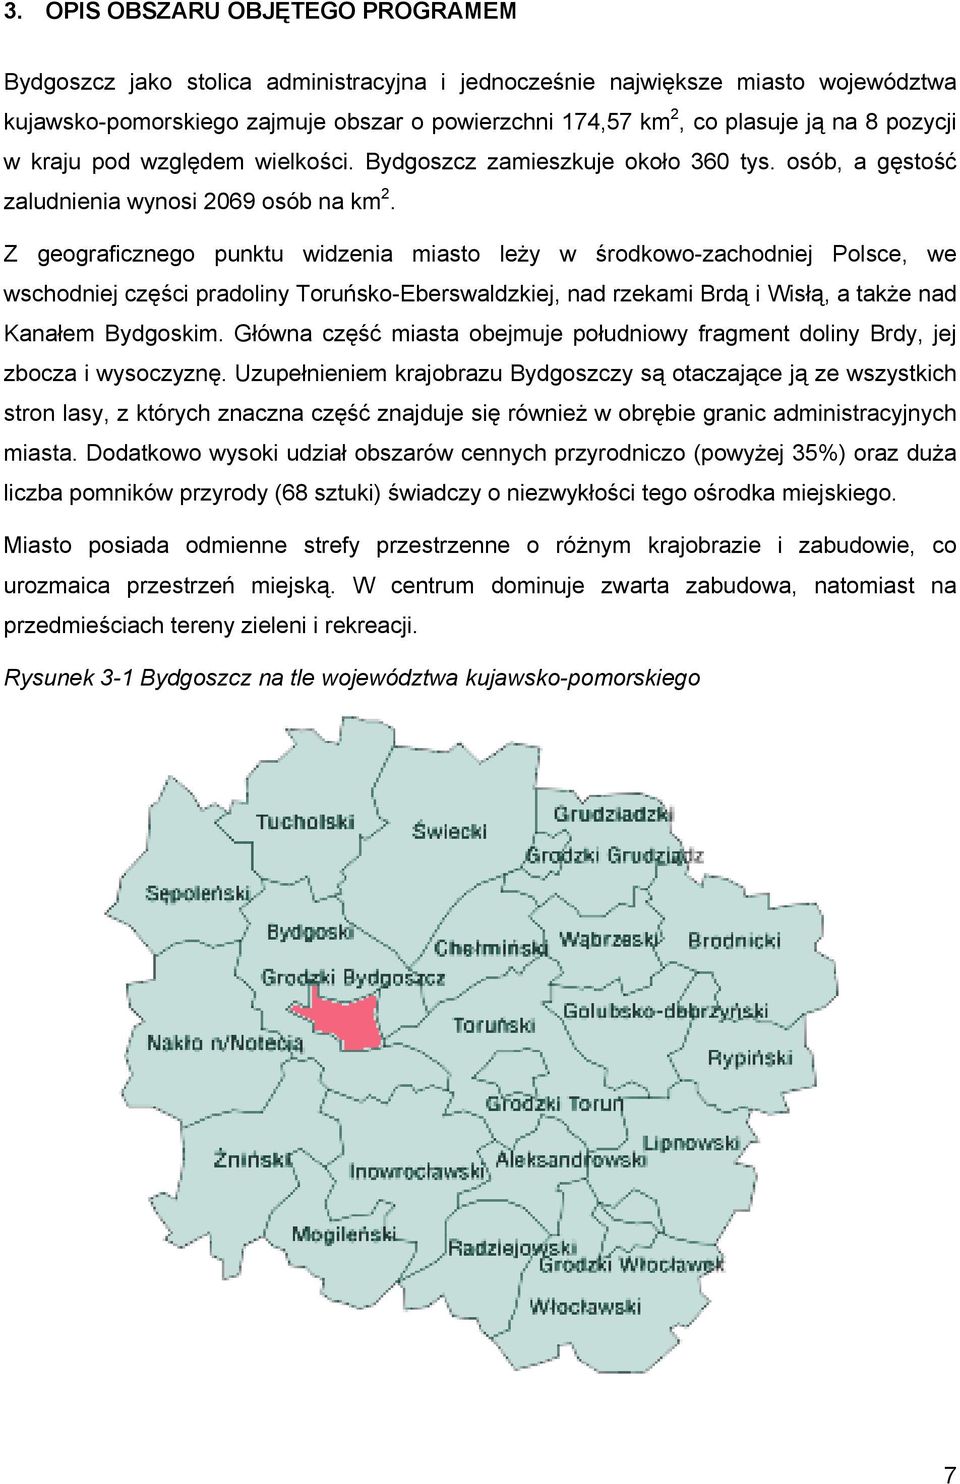 Z geograficznego punktu widzenia miasto leży w środkowo-zachodniej Polsce, we wschodniej części pradoliny Toruńsko-Eberswaldzkiej, nad rzekami Brdą i Wisłą, a także nad Kanałem Bydgoskim.